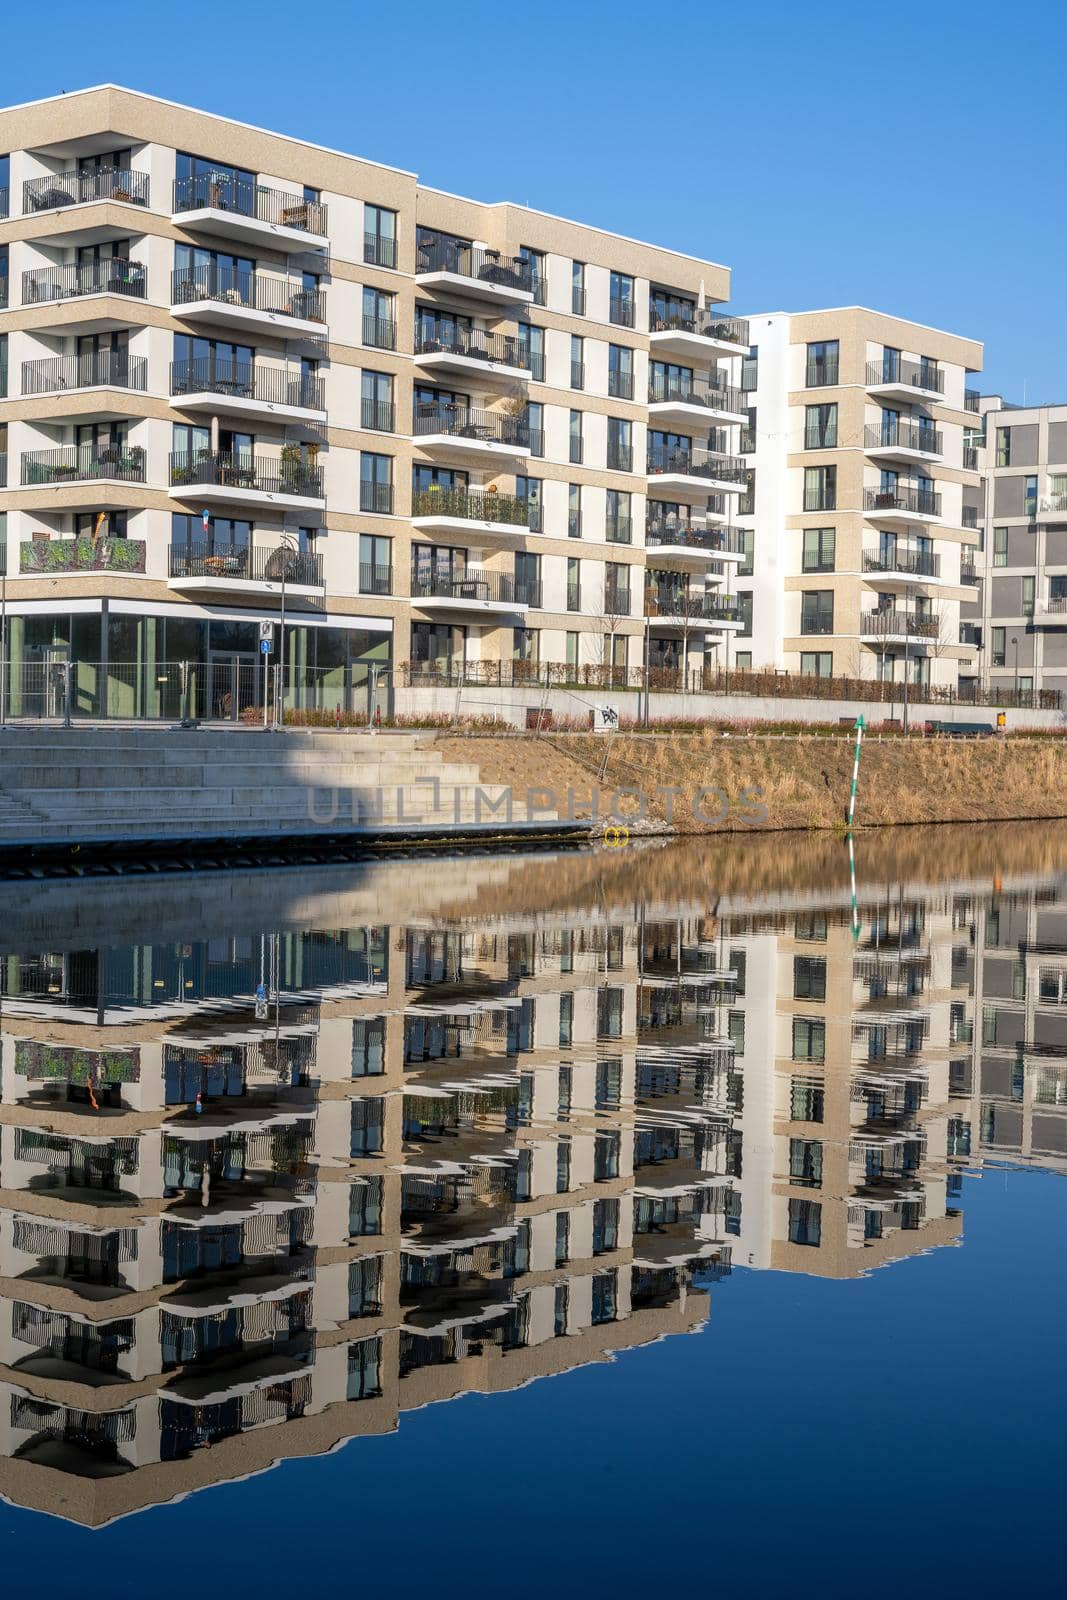 Modern apartment buildings seen in Berlin, Germany by elxeneize